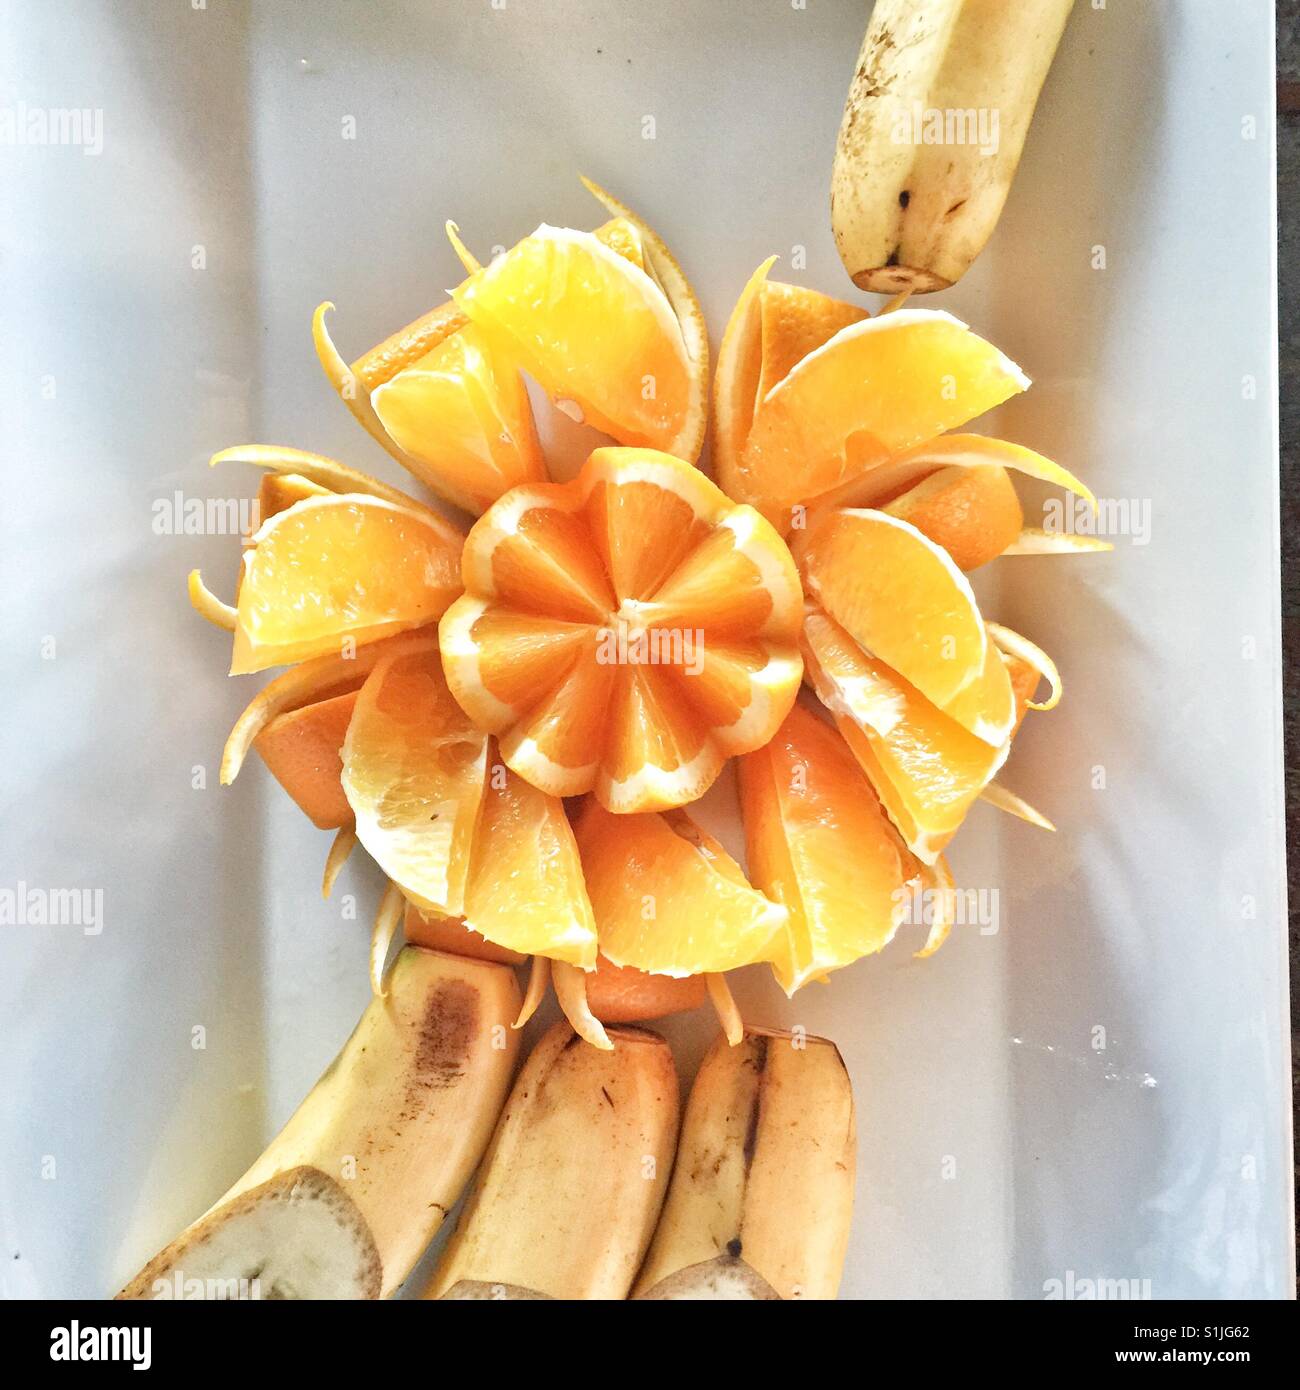 Artistiquement orange couper et présenté sur plaque blanche avec la banane Banque D'Images